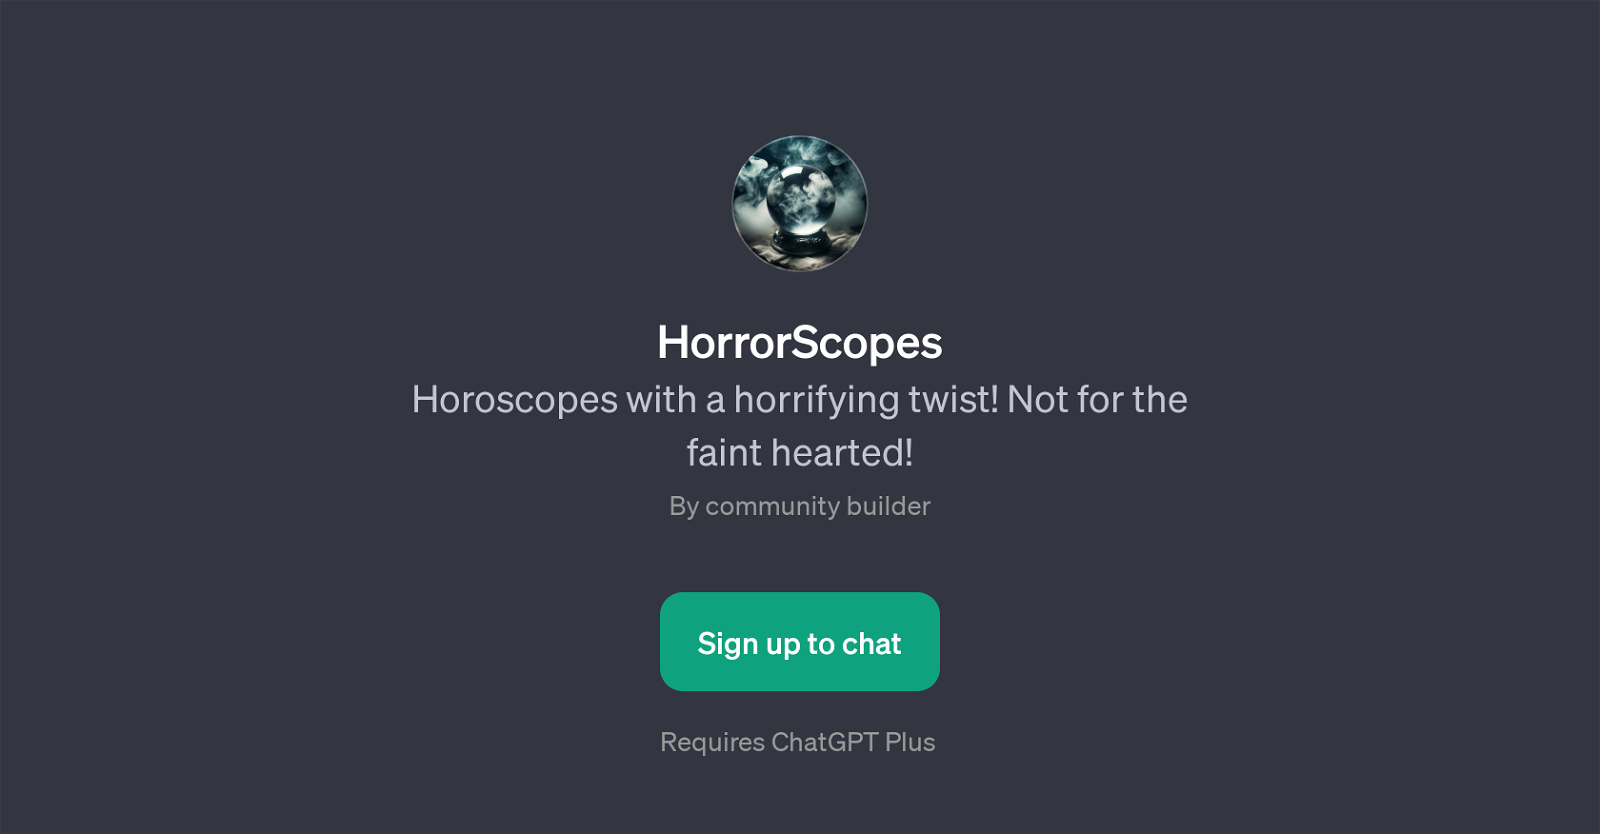 HorrorScopes website